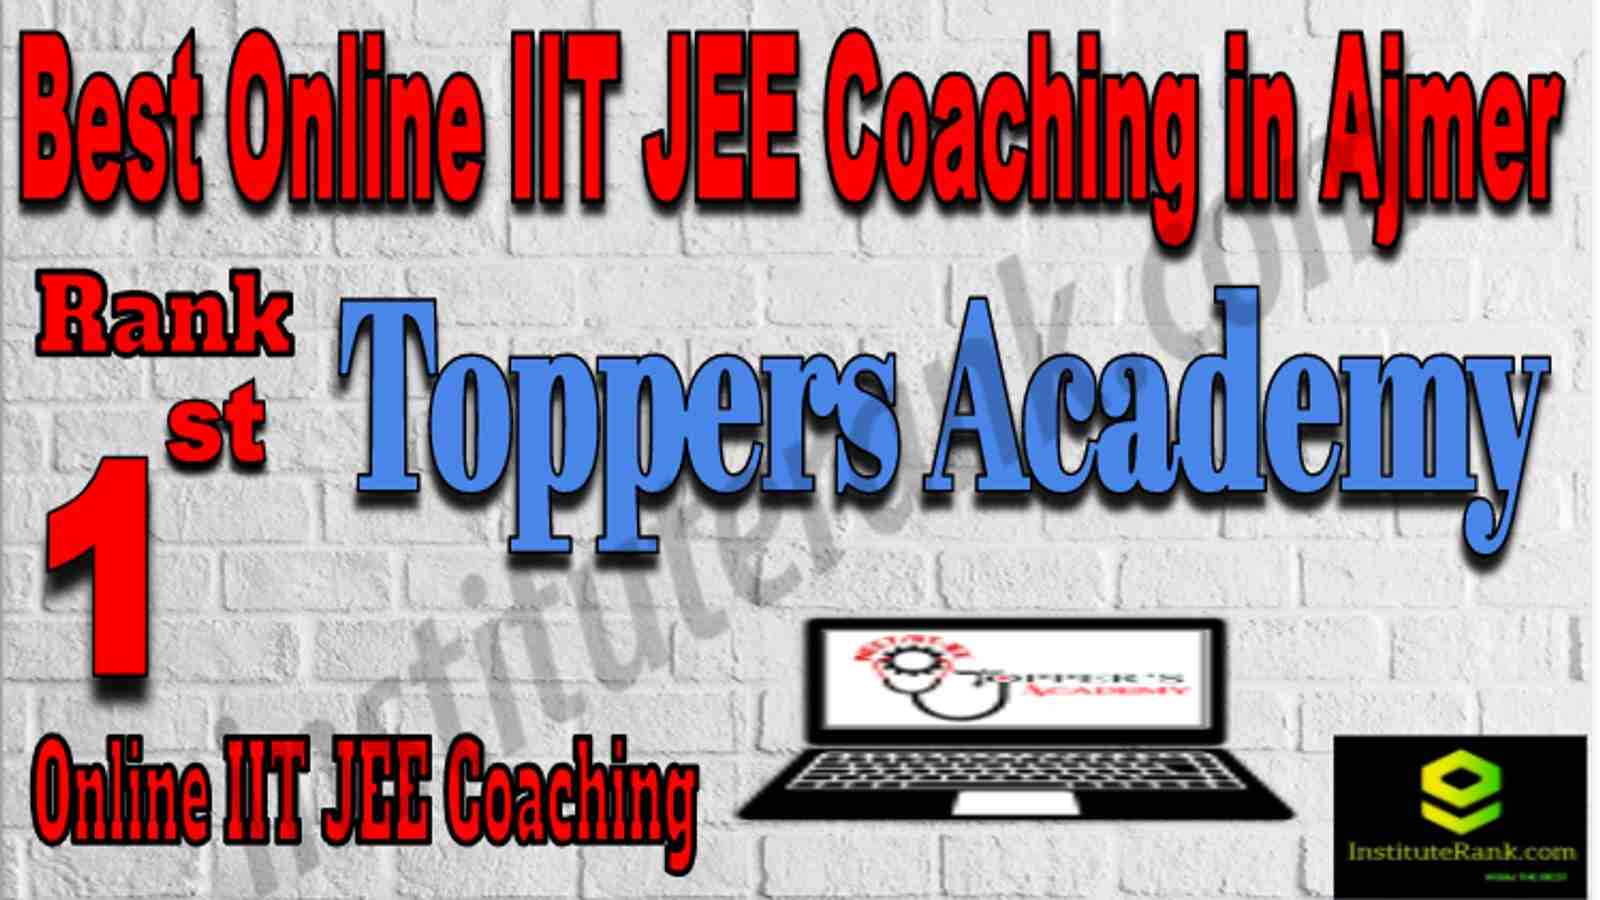 Rank 1 Best Online IIT JEE Coaching in Ajmer